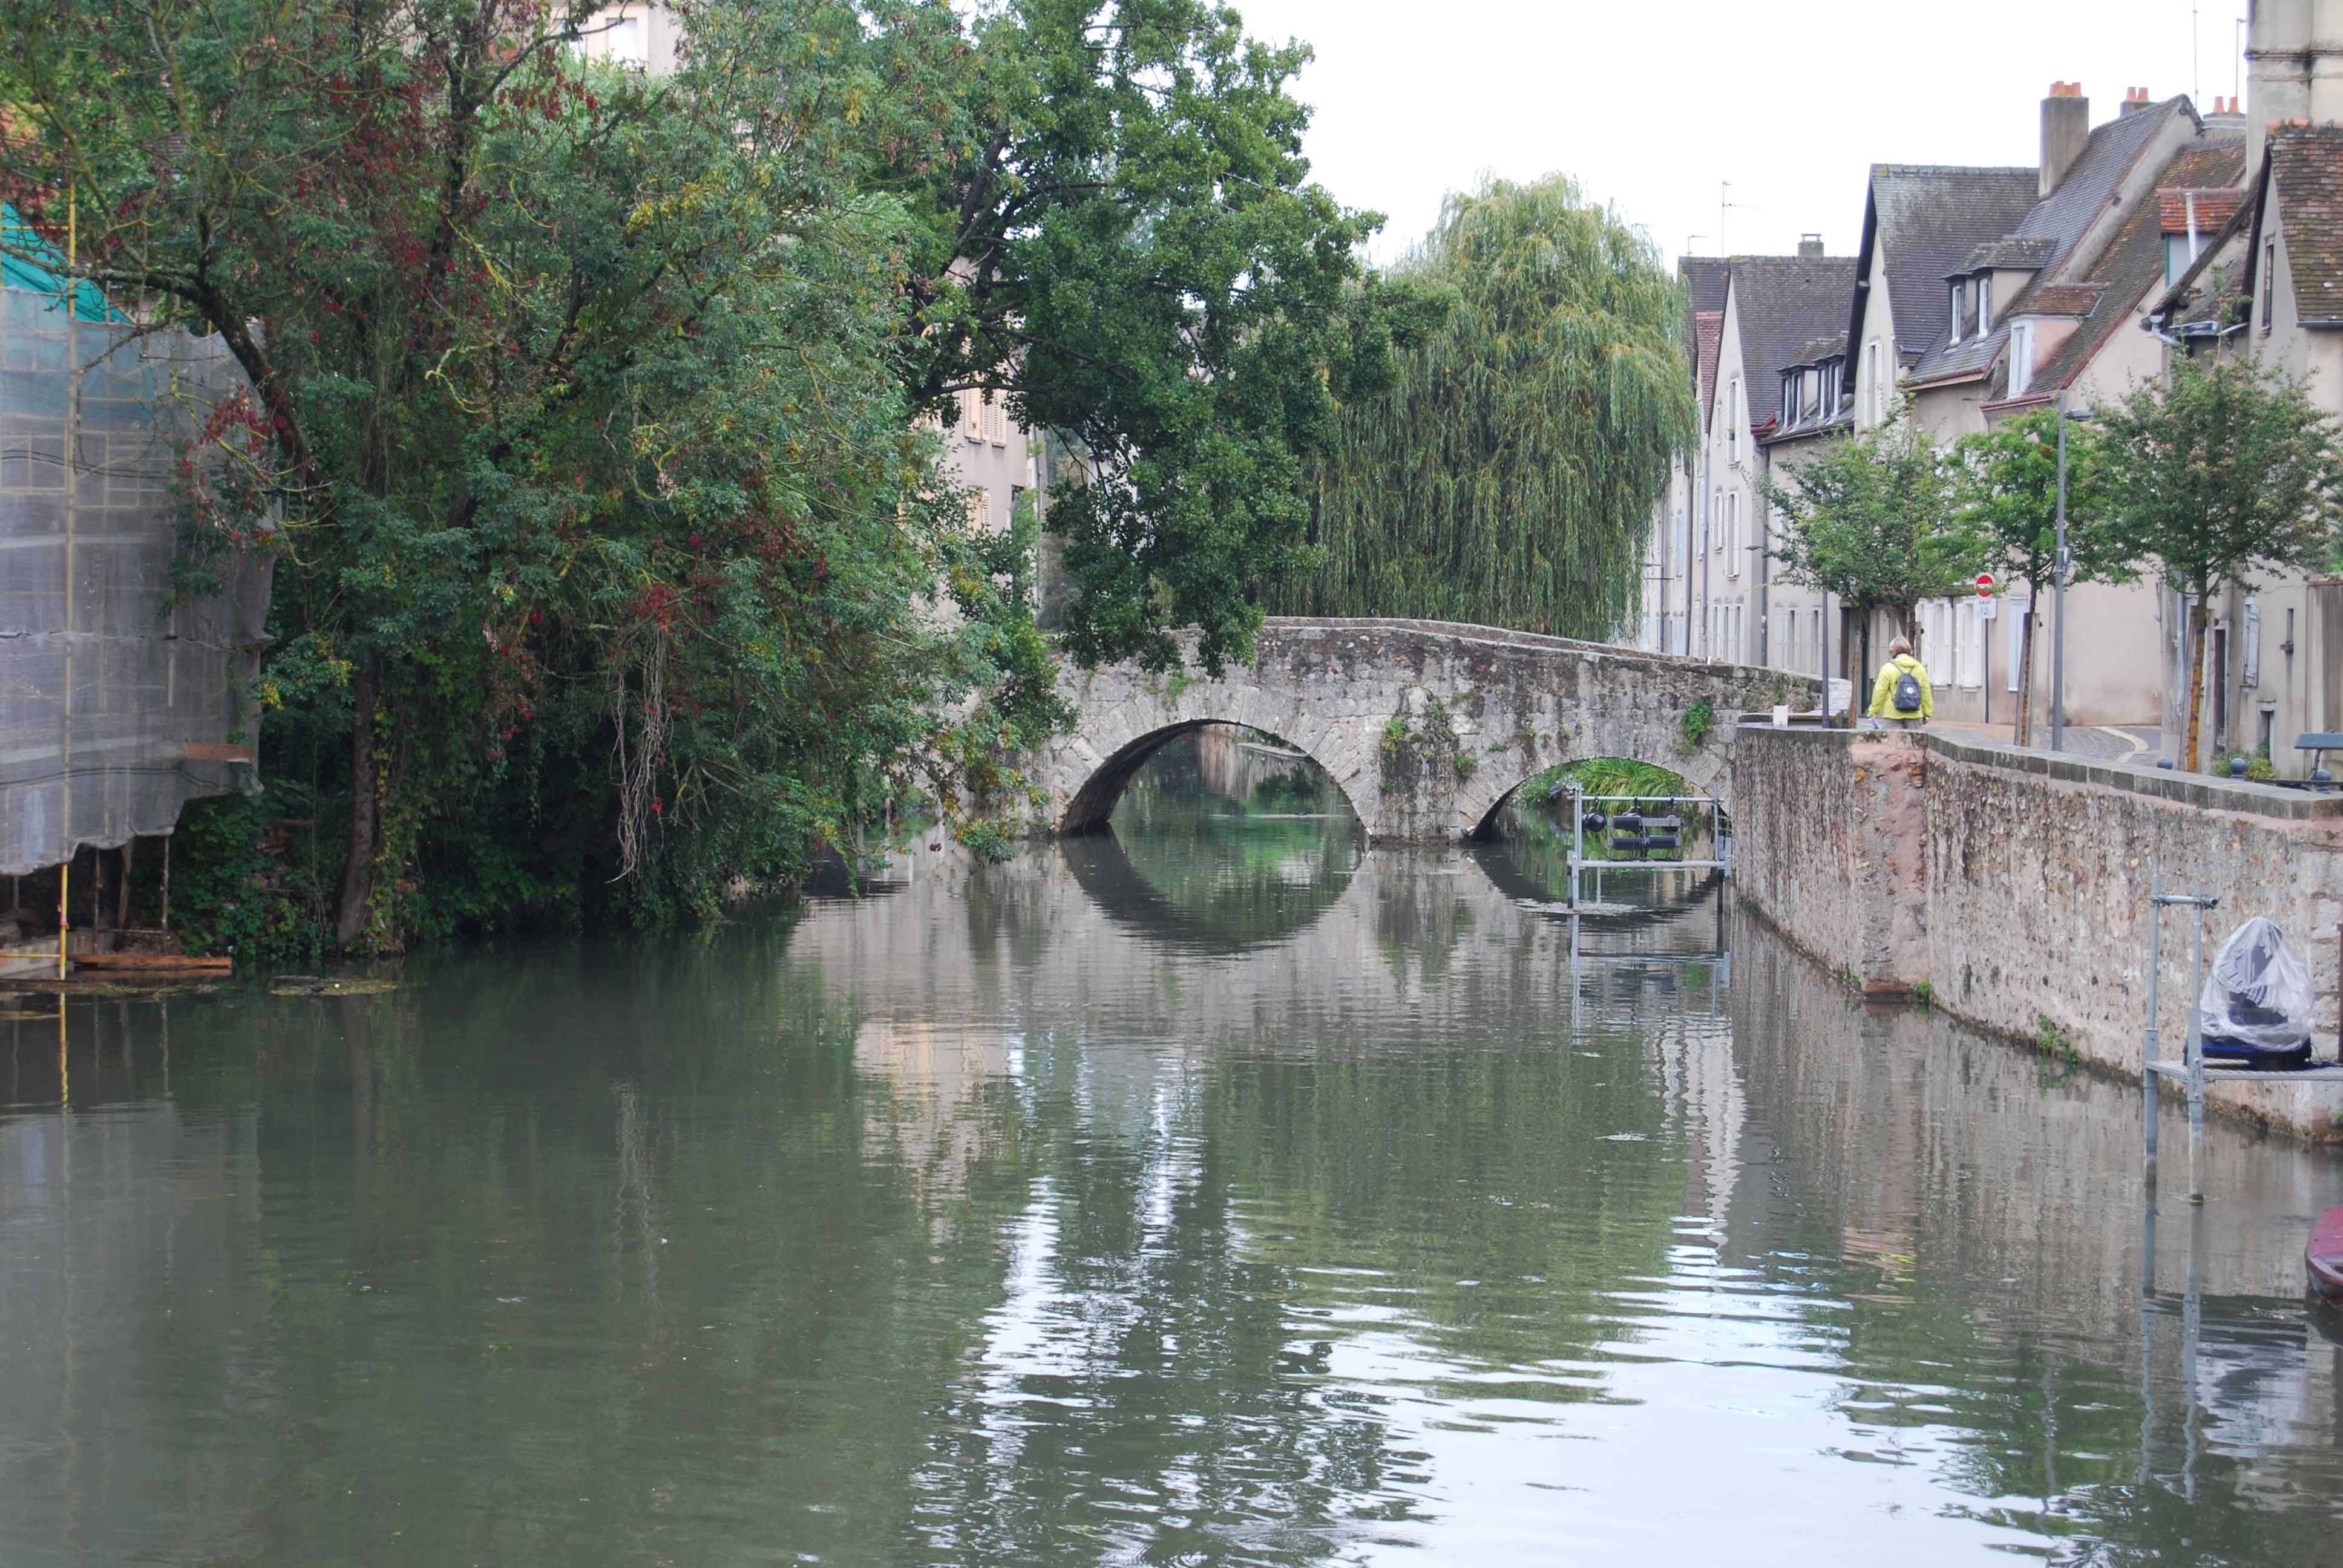 Chartres: Arte, espiritualidad y esoterismo. - Blogs de Francia - Un paseo por Chartres. Arte y Paisaje (3)